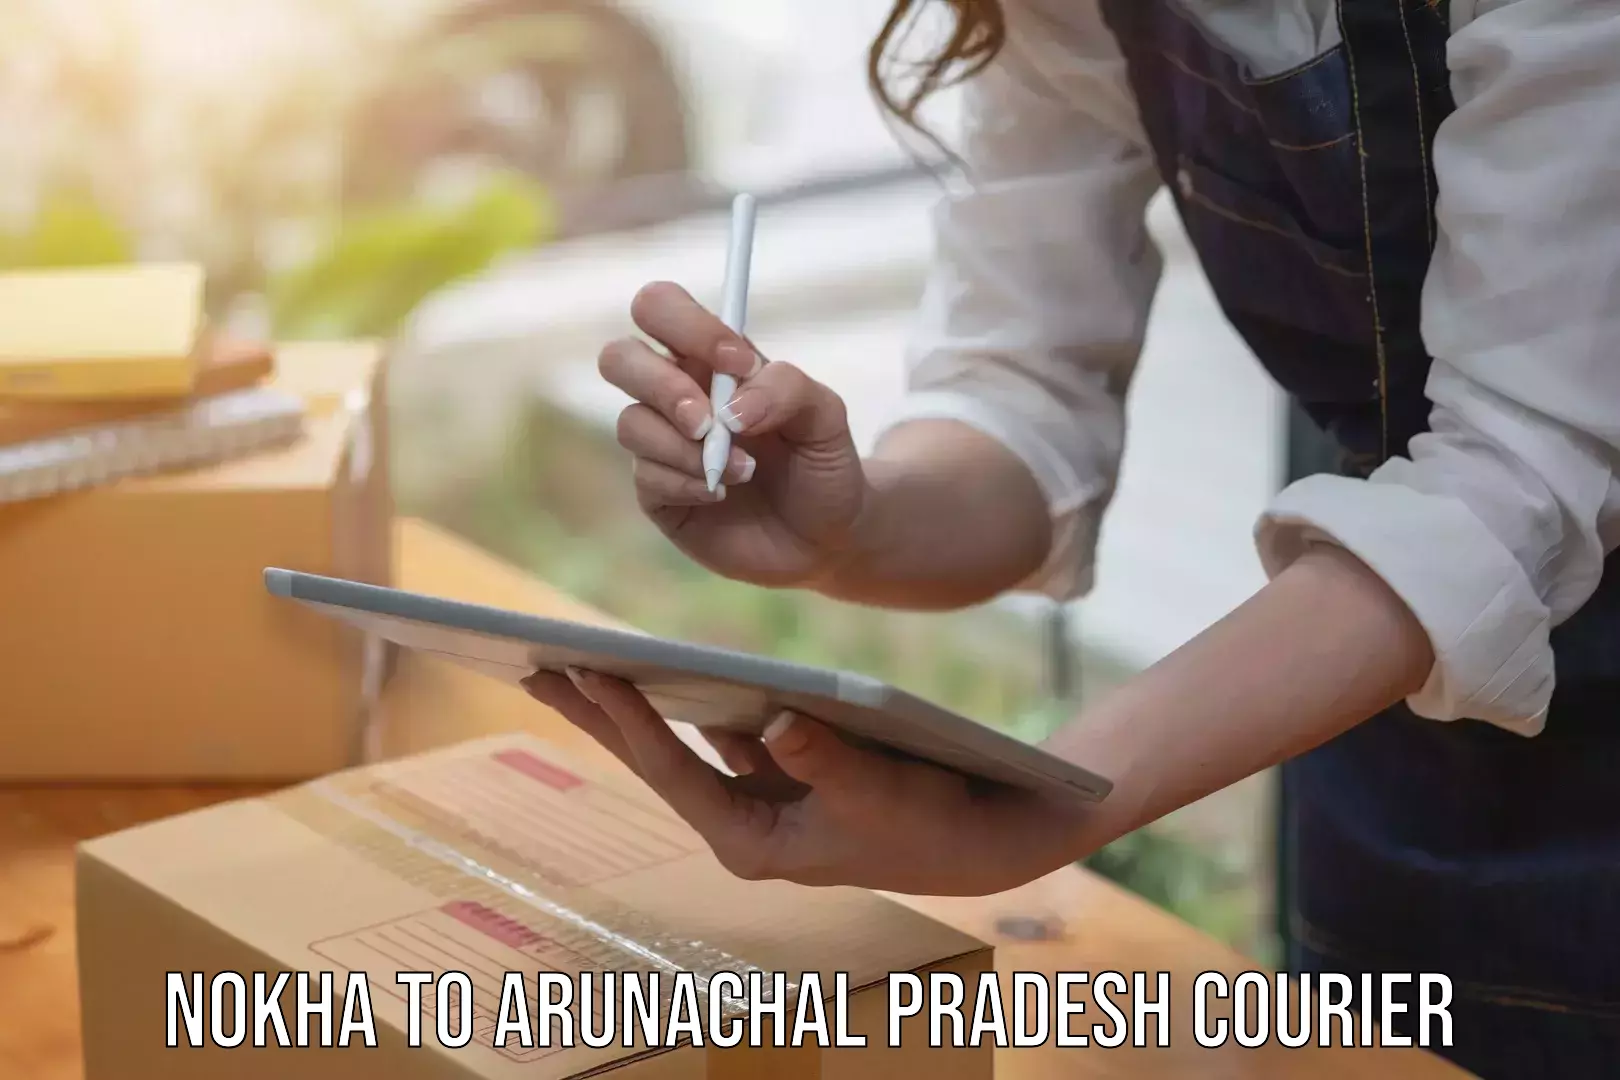 Nationwide courier service Nokha to Arunachal Pradesh